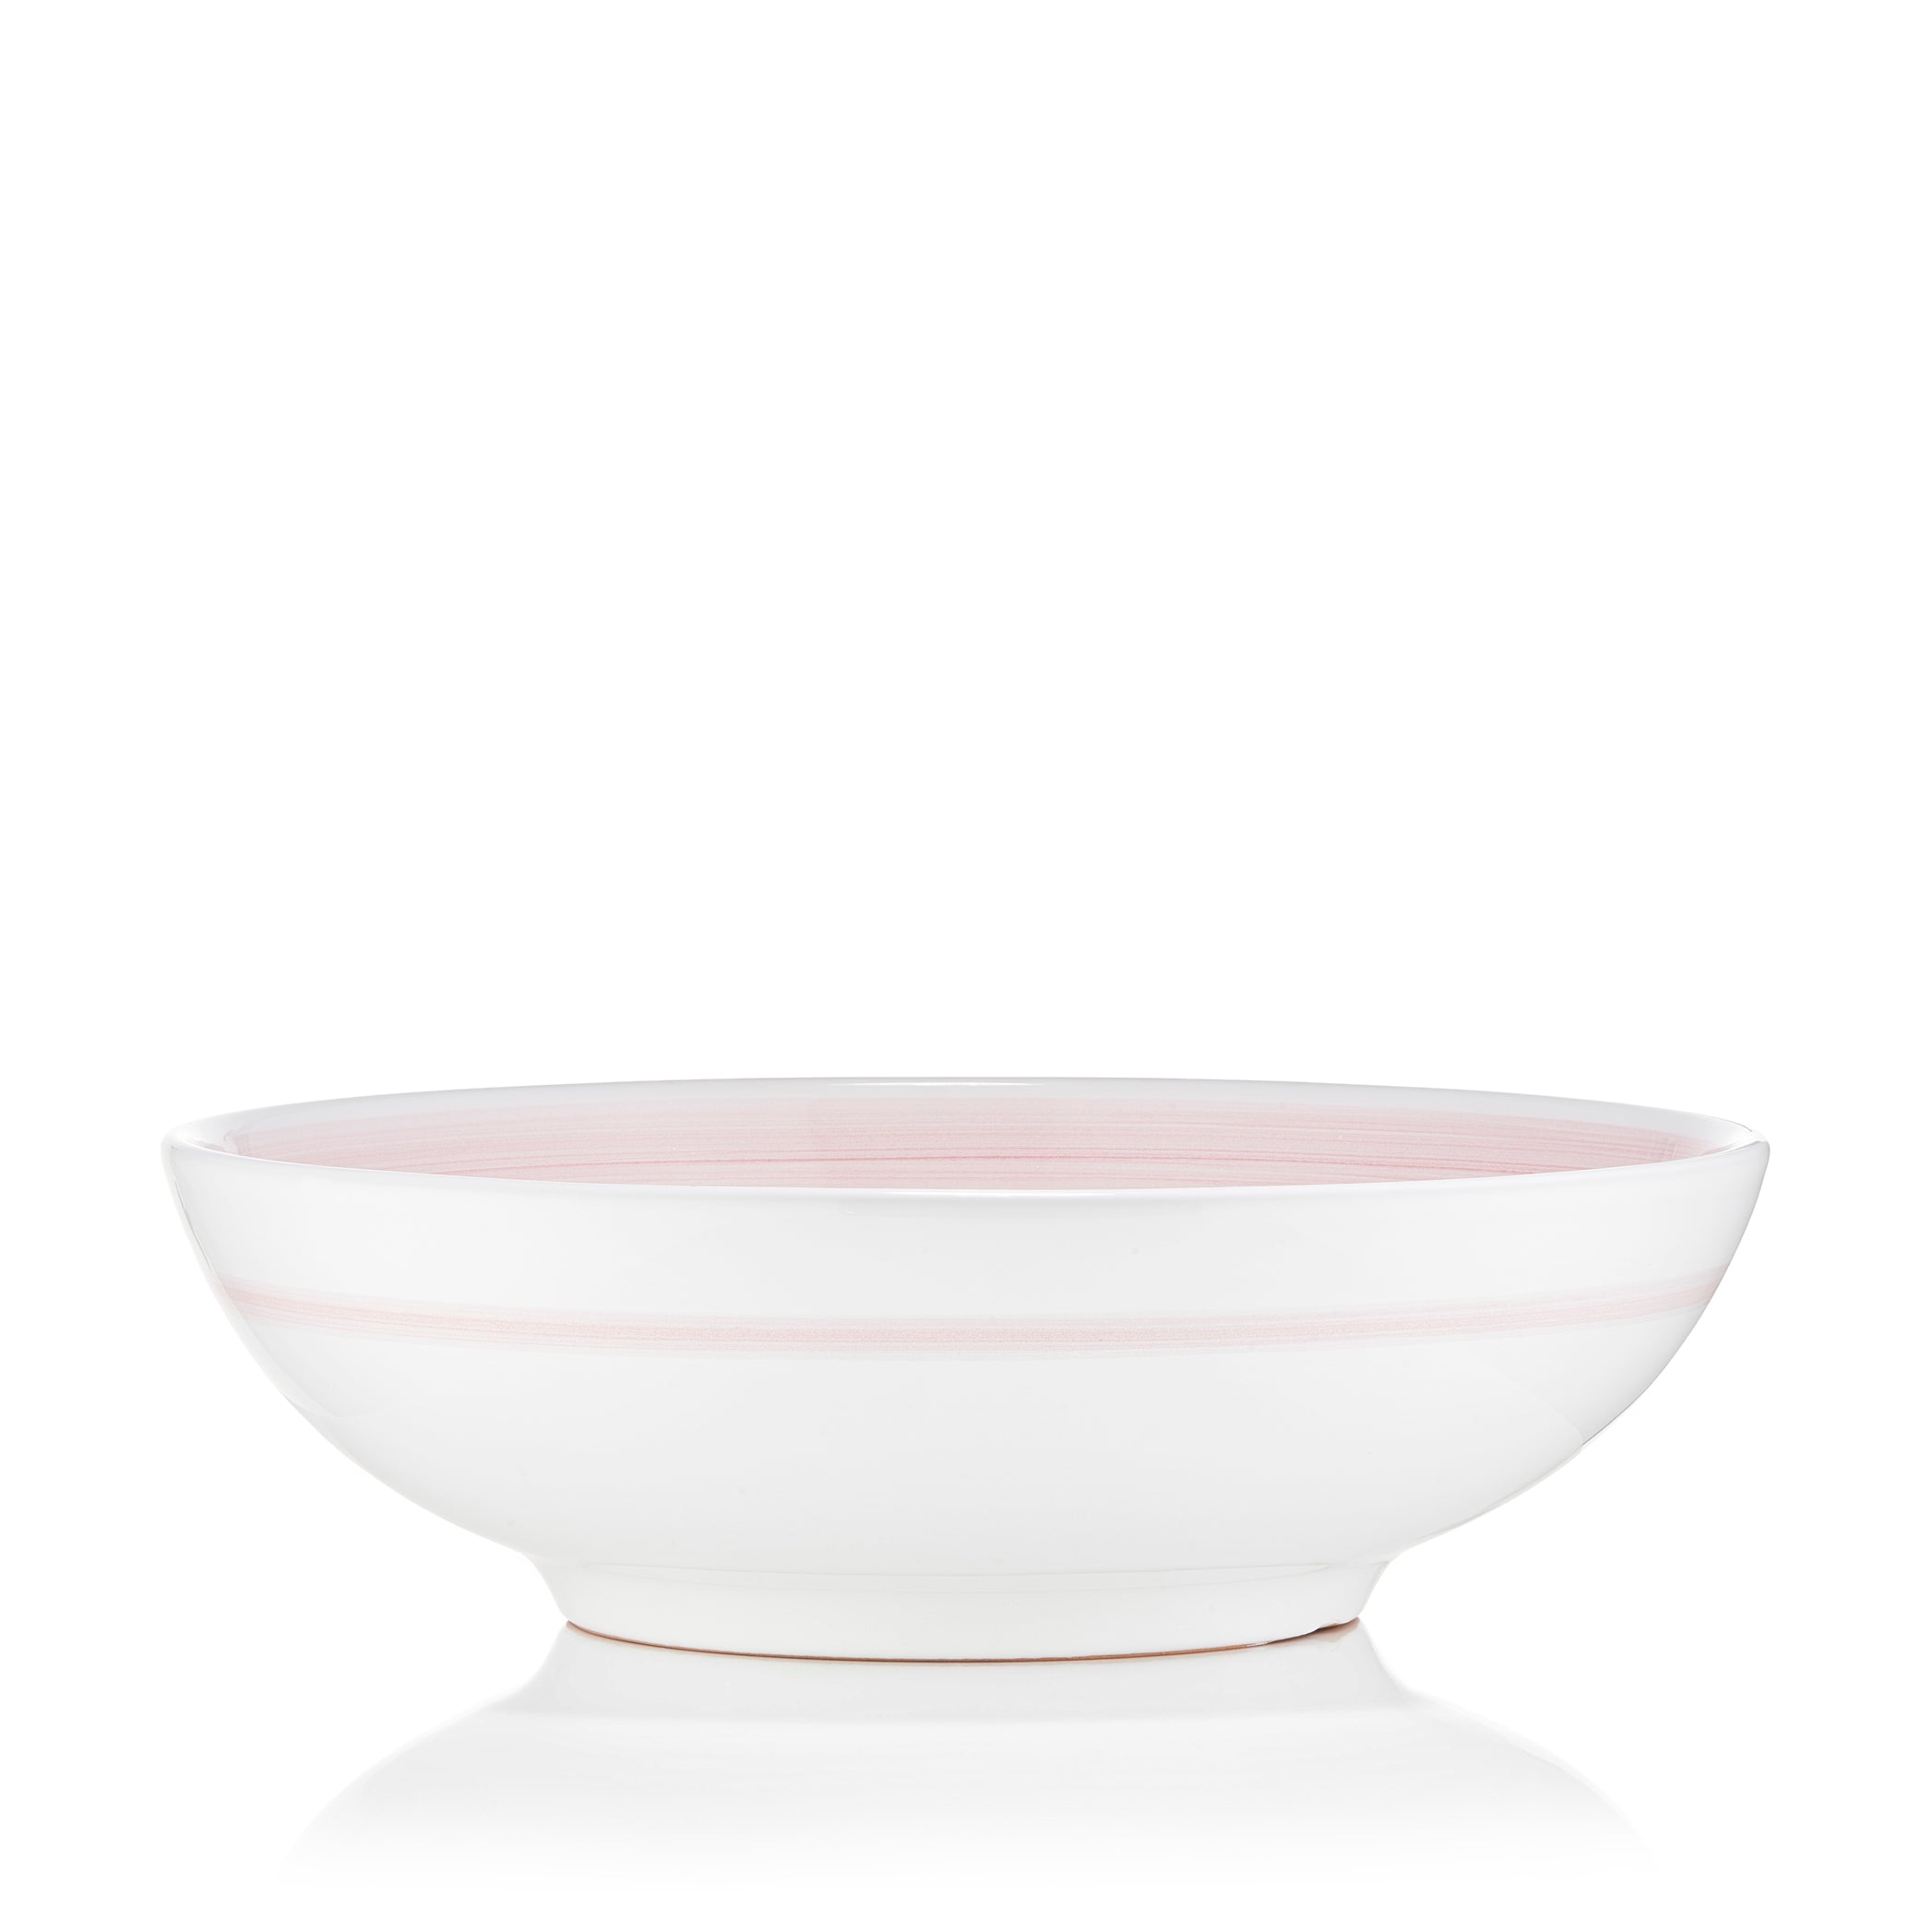 S&B 'Brushed' Ceramic Serving Bowl in Pastel Pink, 30cm